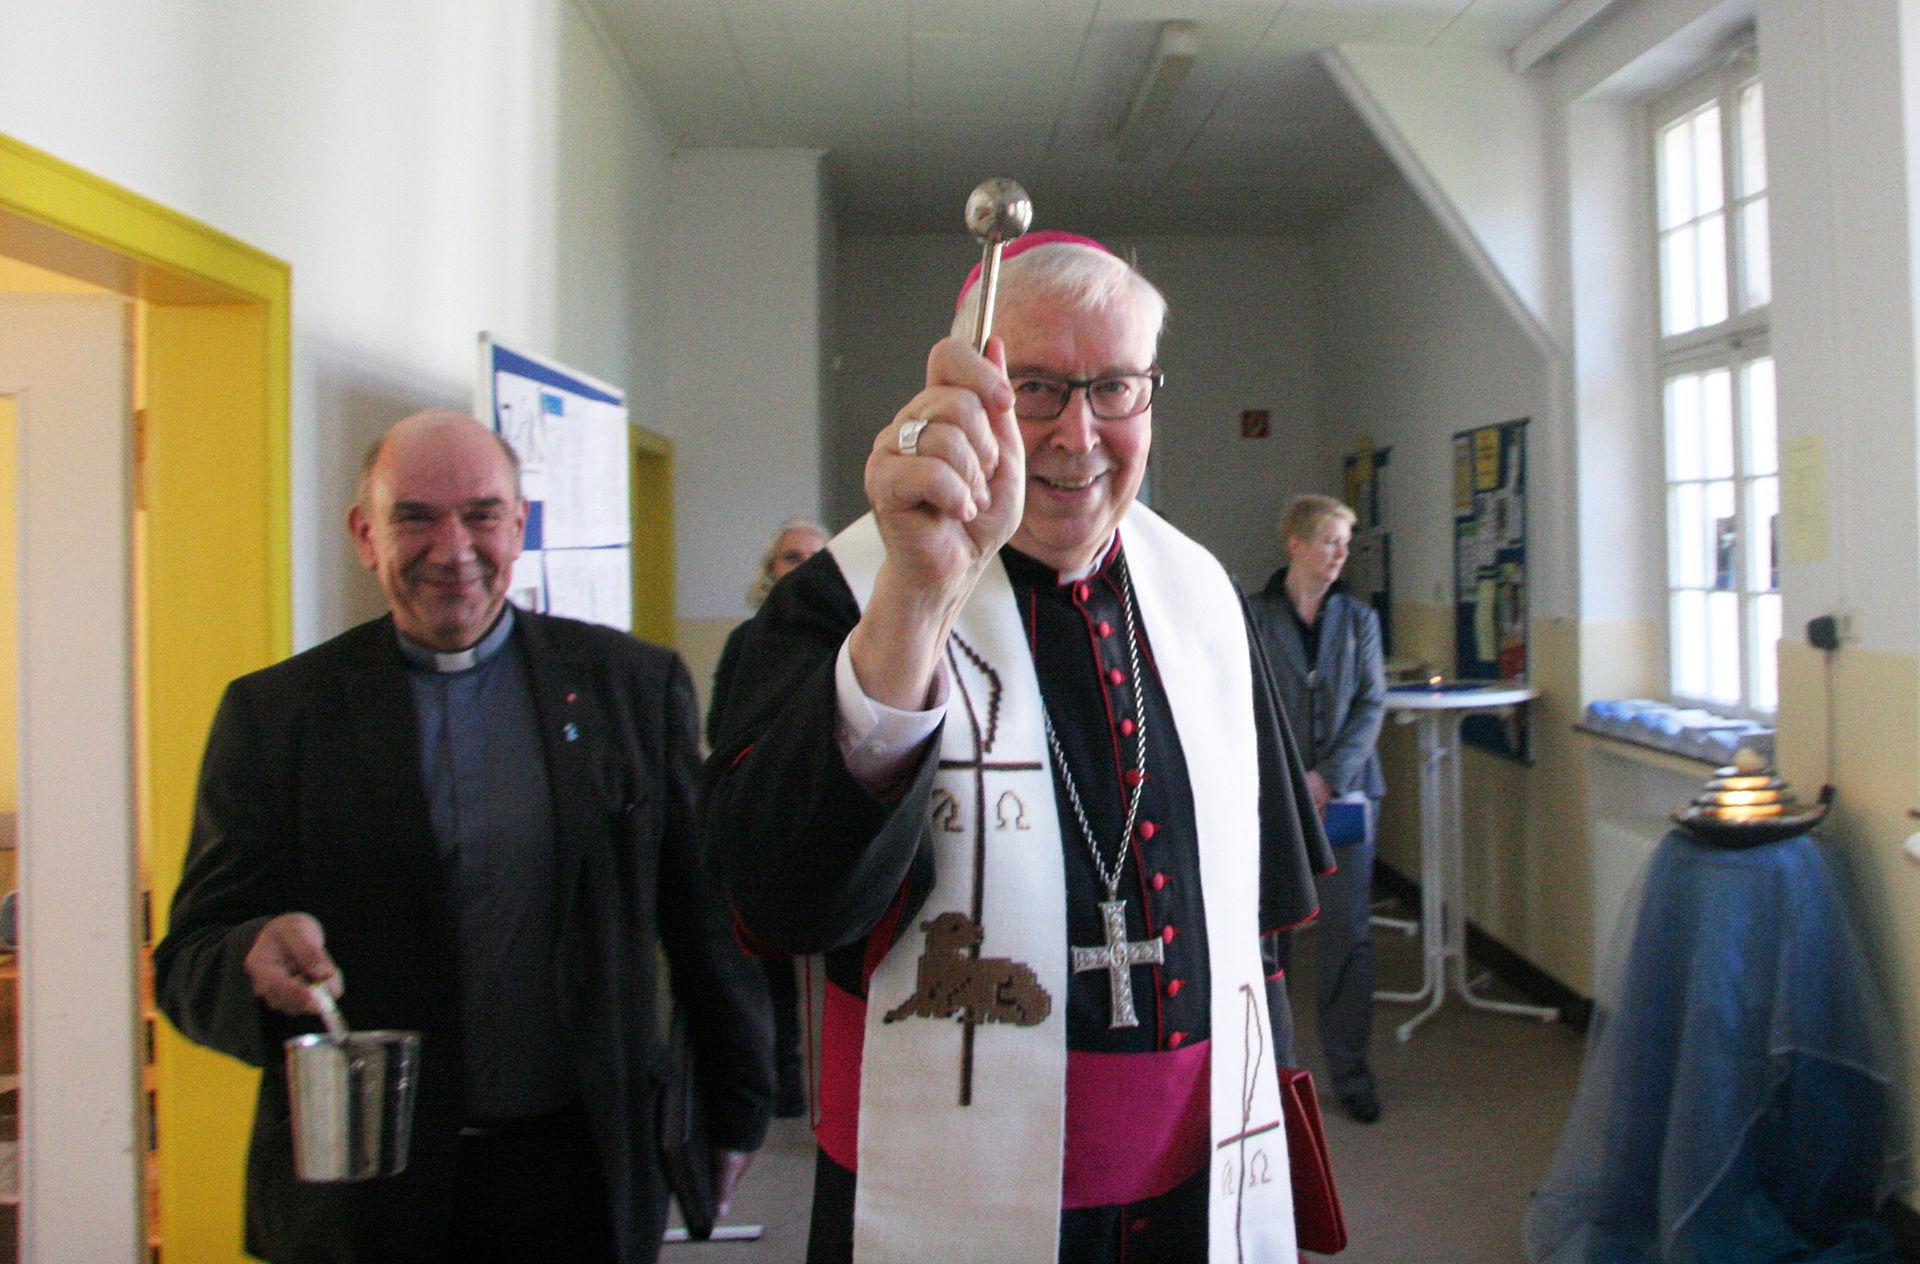 Propst Bernd Galluschke (links), hier im Bild mit Bischof Norbert Trelle während der Eröffnung des Zentrums für Kirchenentwicklung 2013 in Duderstadt, ist der Initiator des Duderstädter Think Tank.